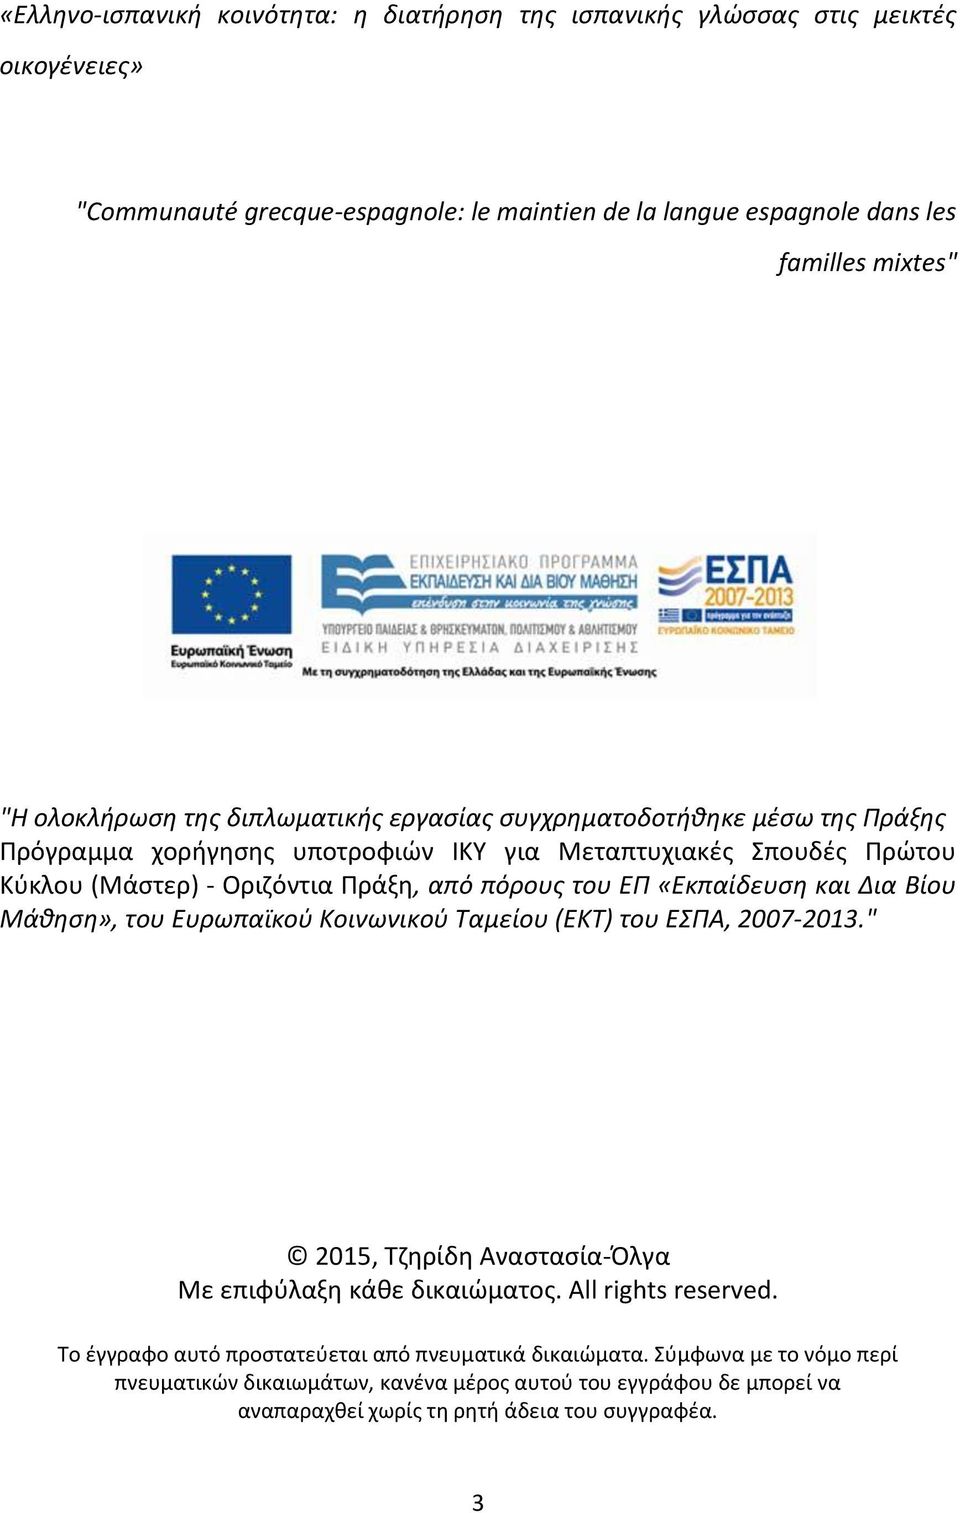 ΕΠ «Εκπαίδευση και Δια Βίου Μάθηση», του Ευρωπαϊκού Κοινωνικού Ταμείου (ΕΚΤ) του ΕΣΠΑ, 2007 2013." 2015, Τζηρίδη Αναστασία-Όλγα Με επιφύλαξη κάθε δικαιώματος. All rights reserved.